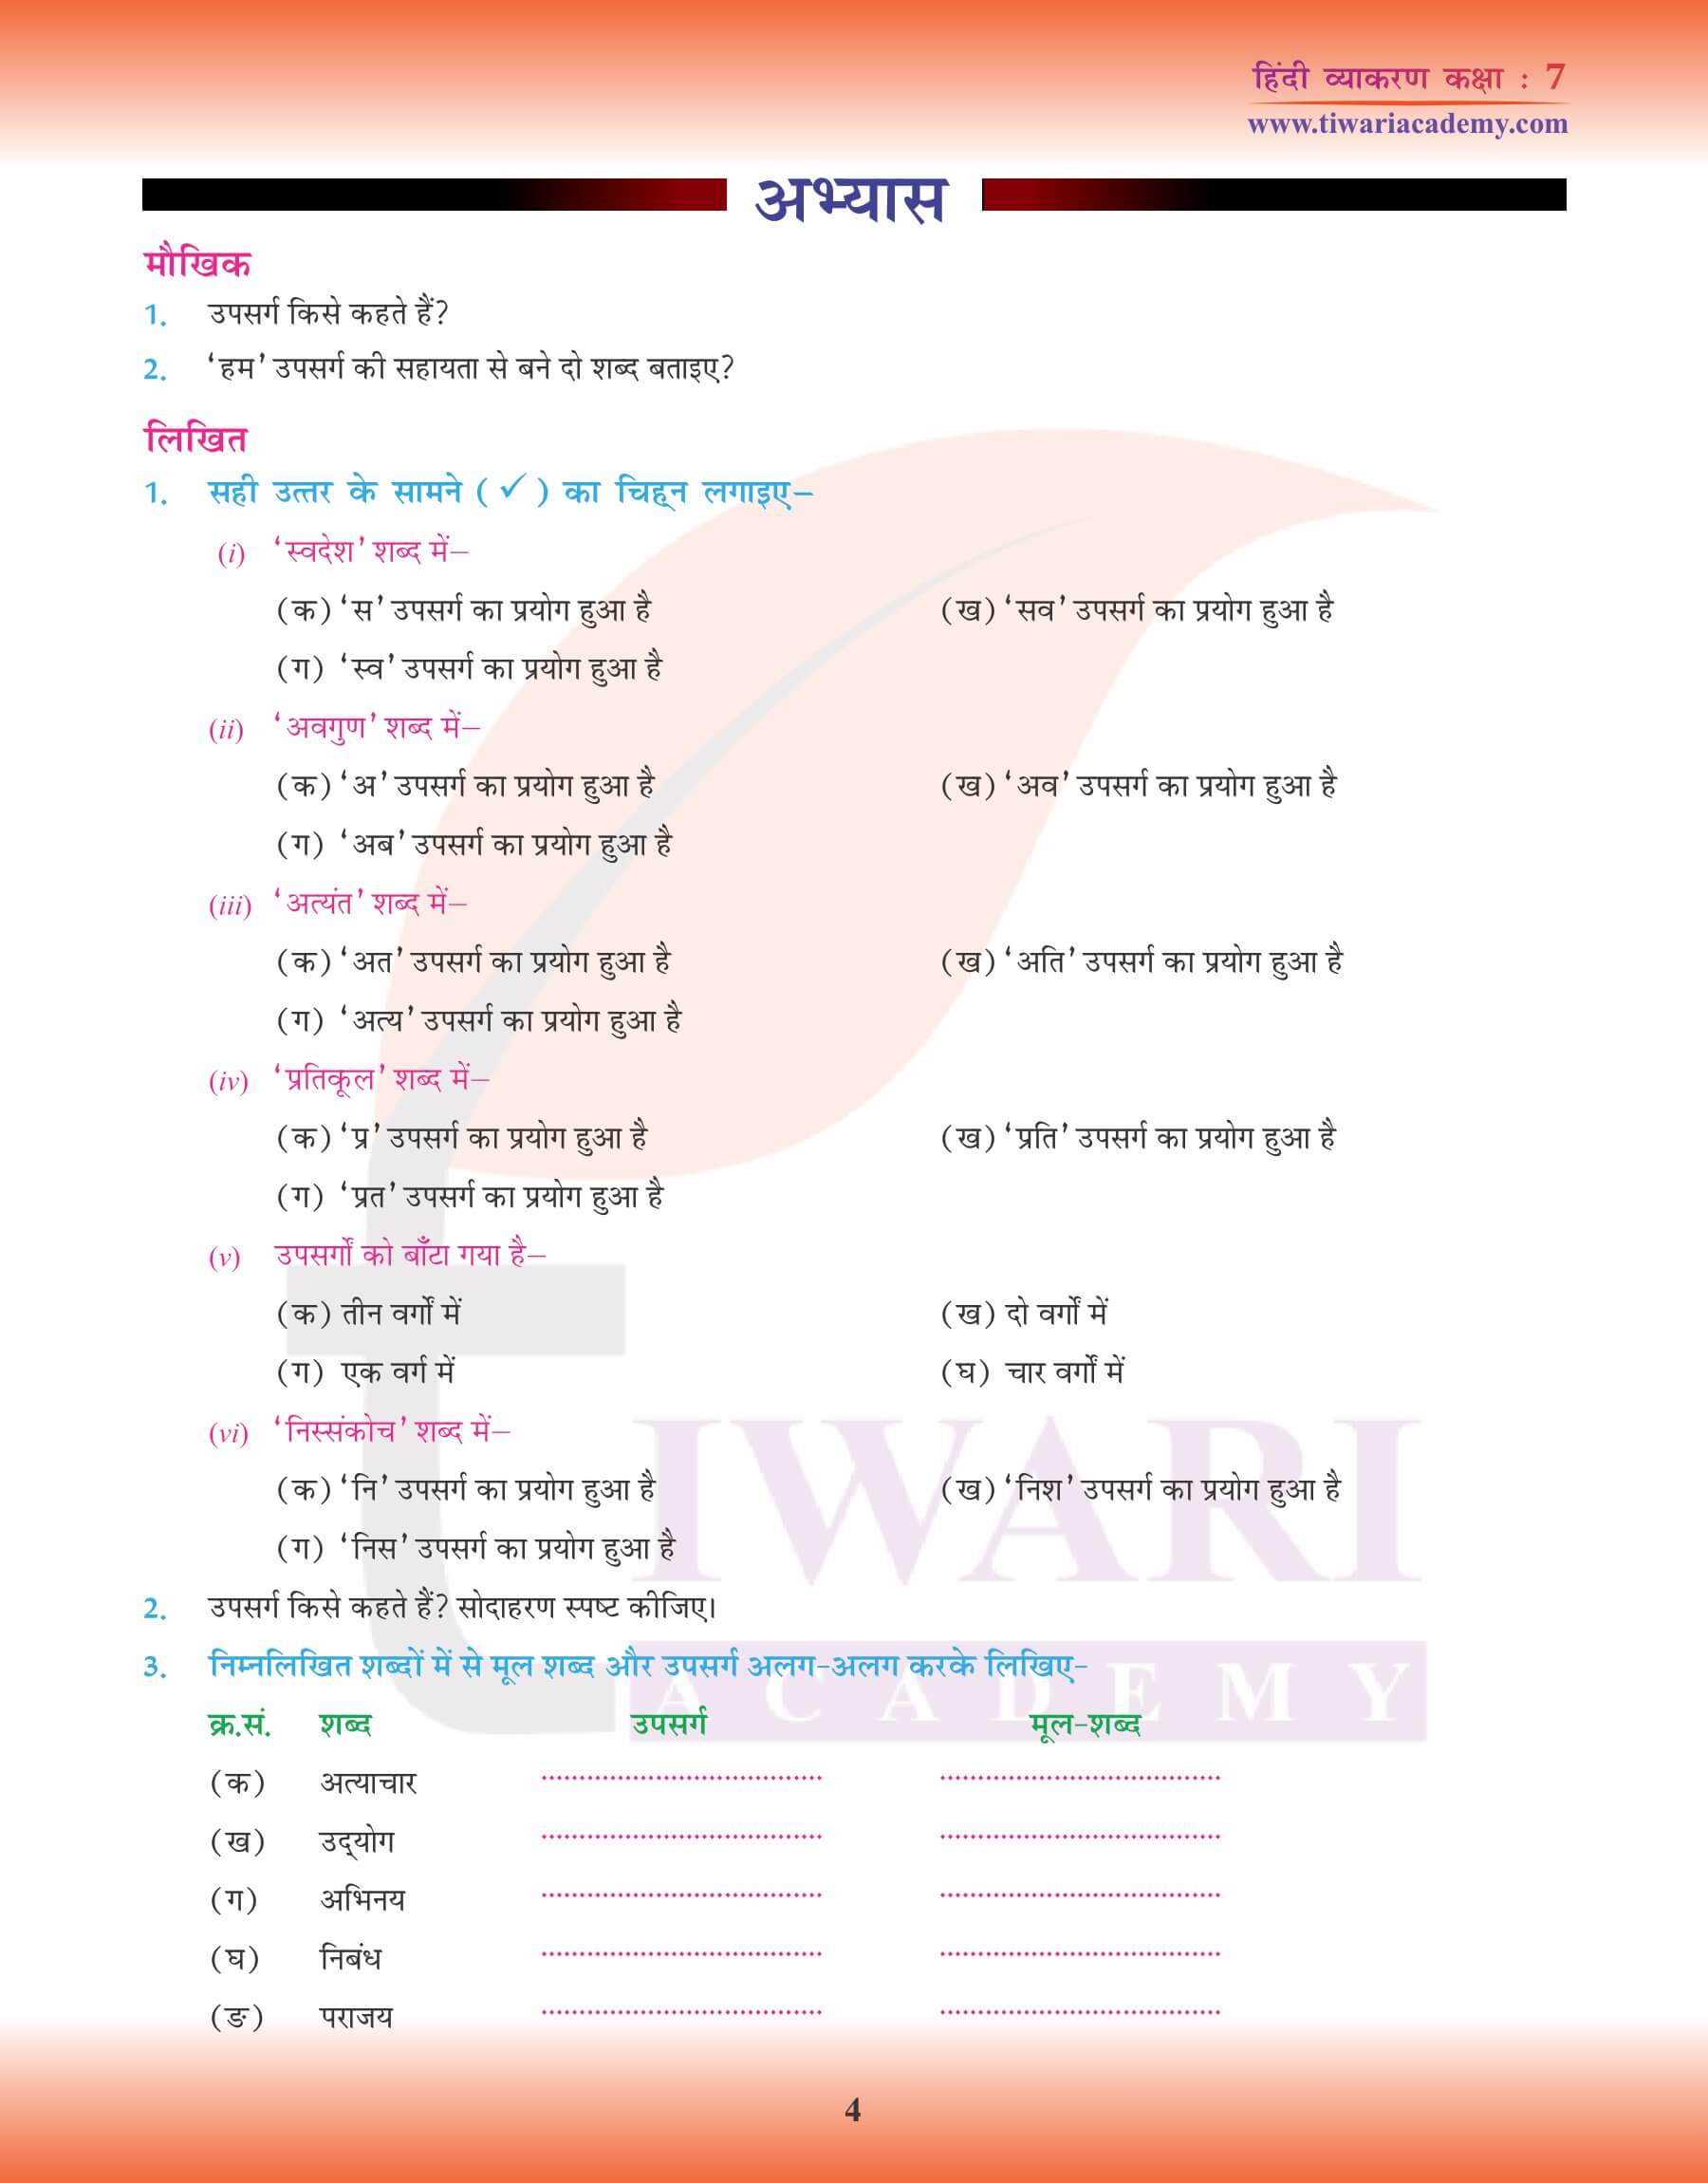 कक्षा 7 हिंदी व्याकरण में उपसर्ग का प्रयोग